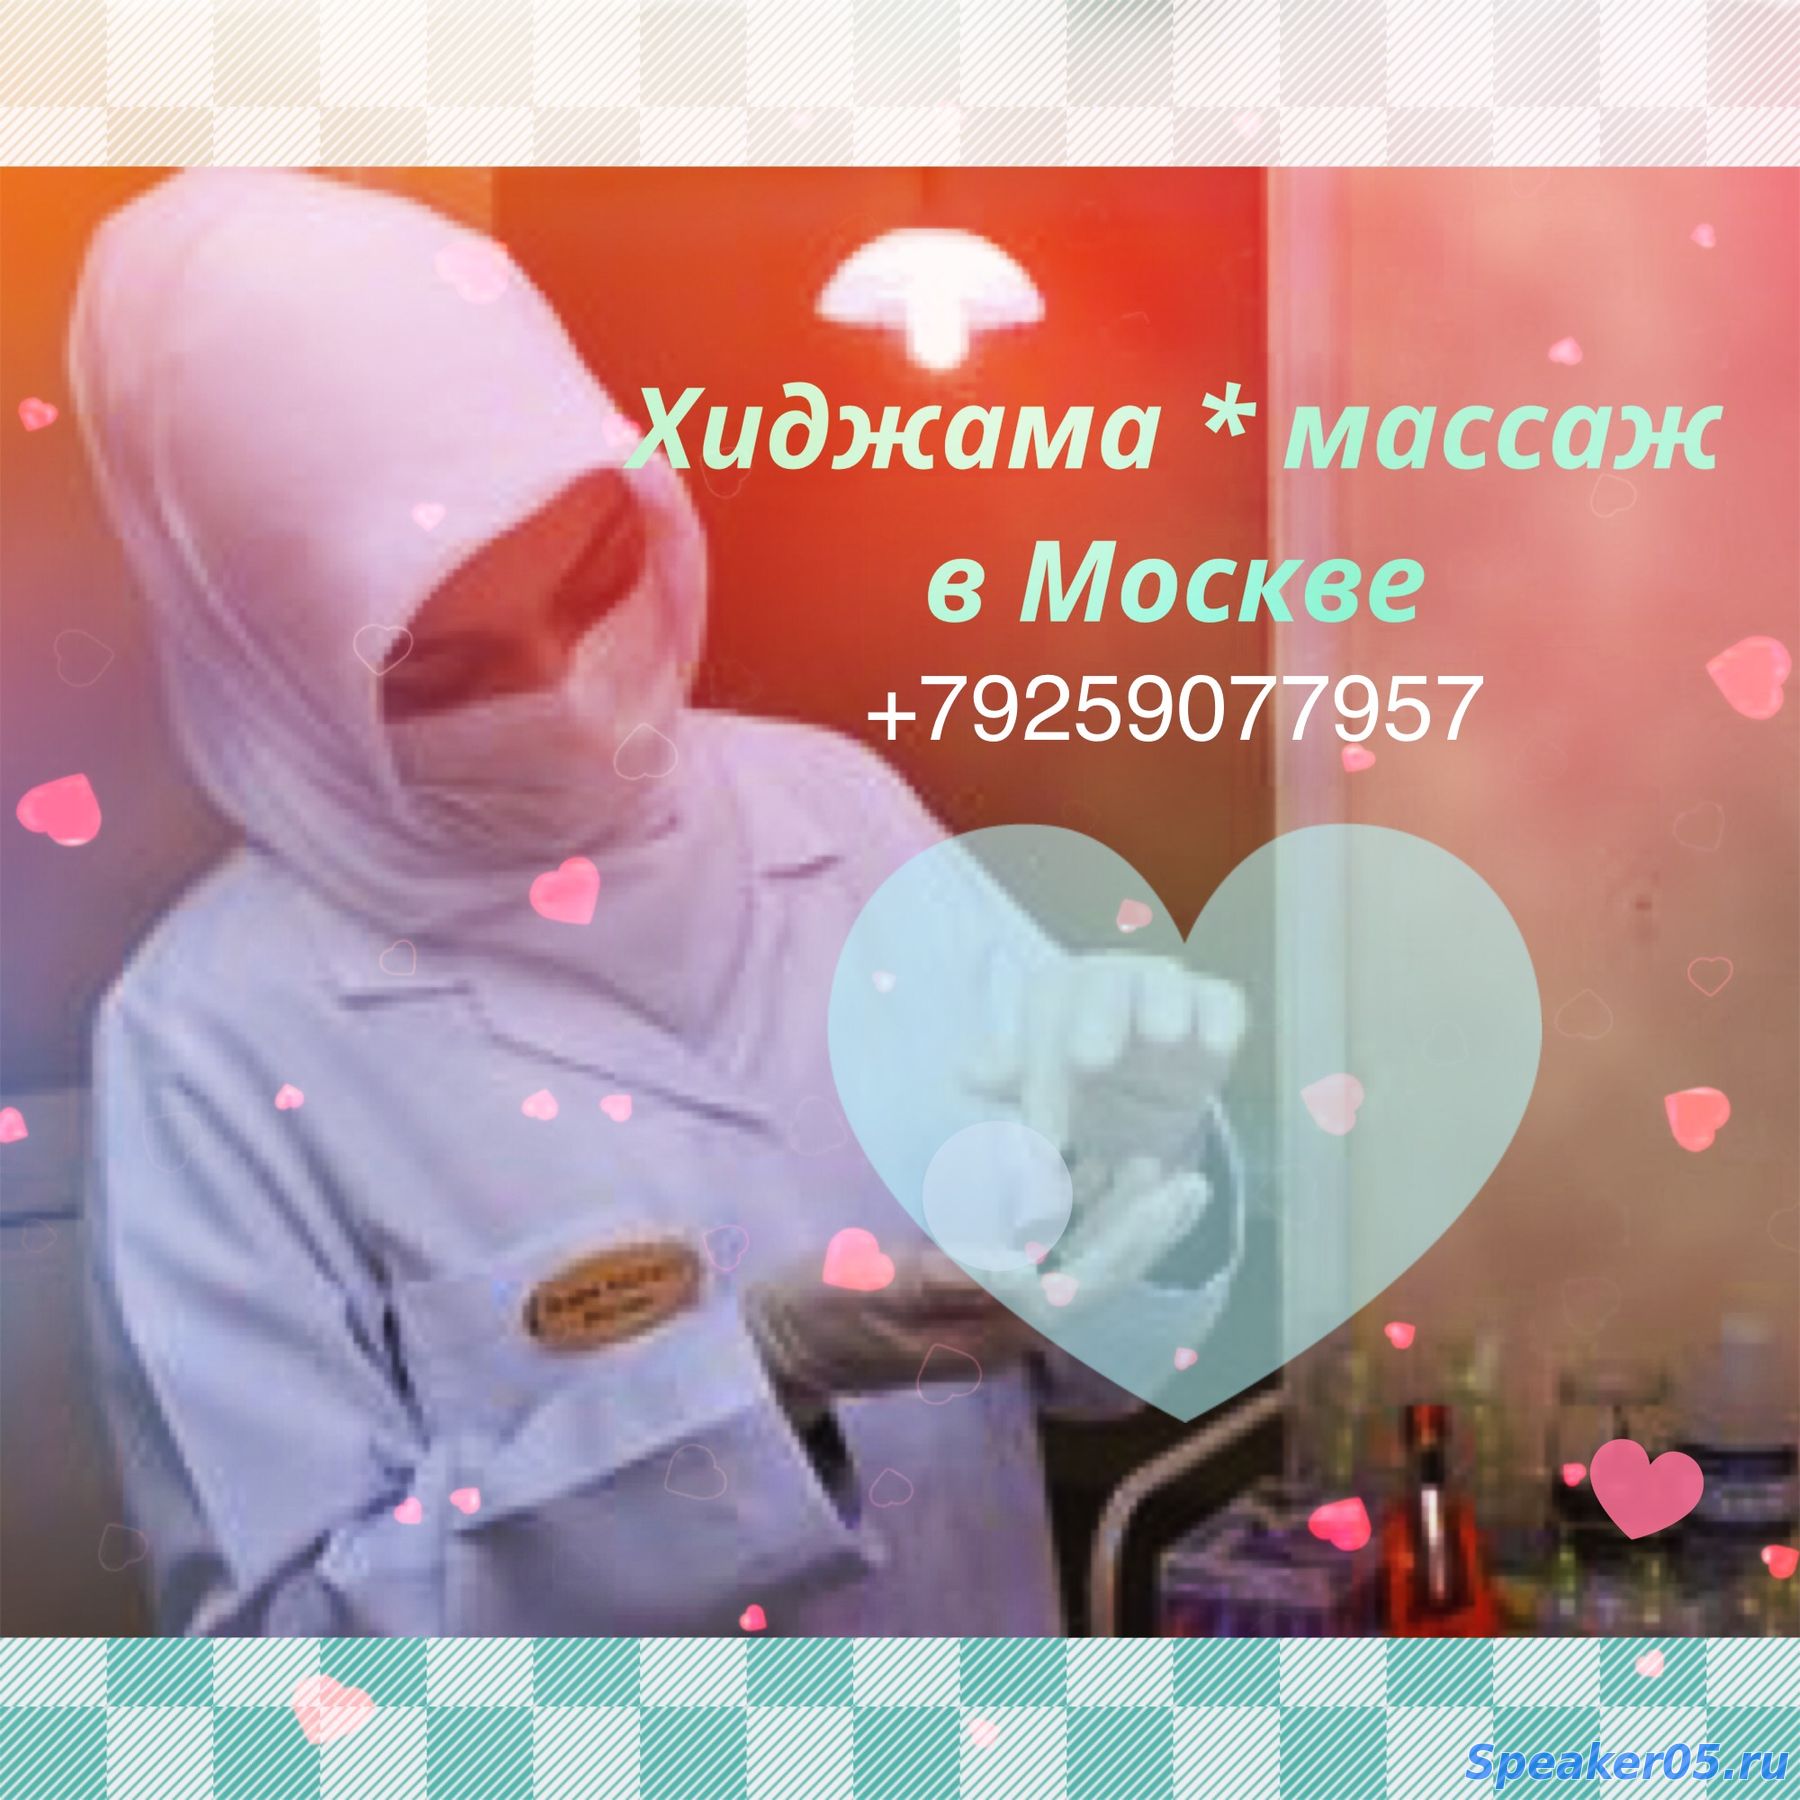 Хиджама Москва для женщин и мужчин